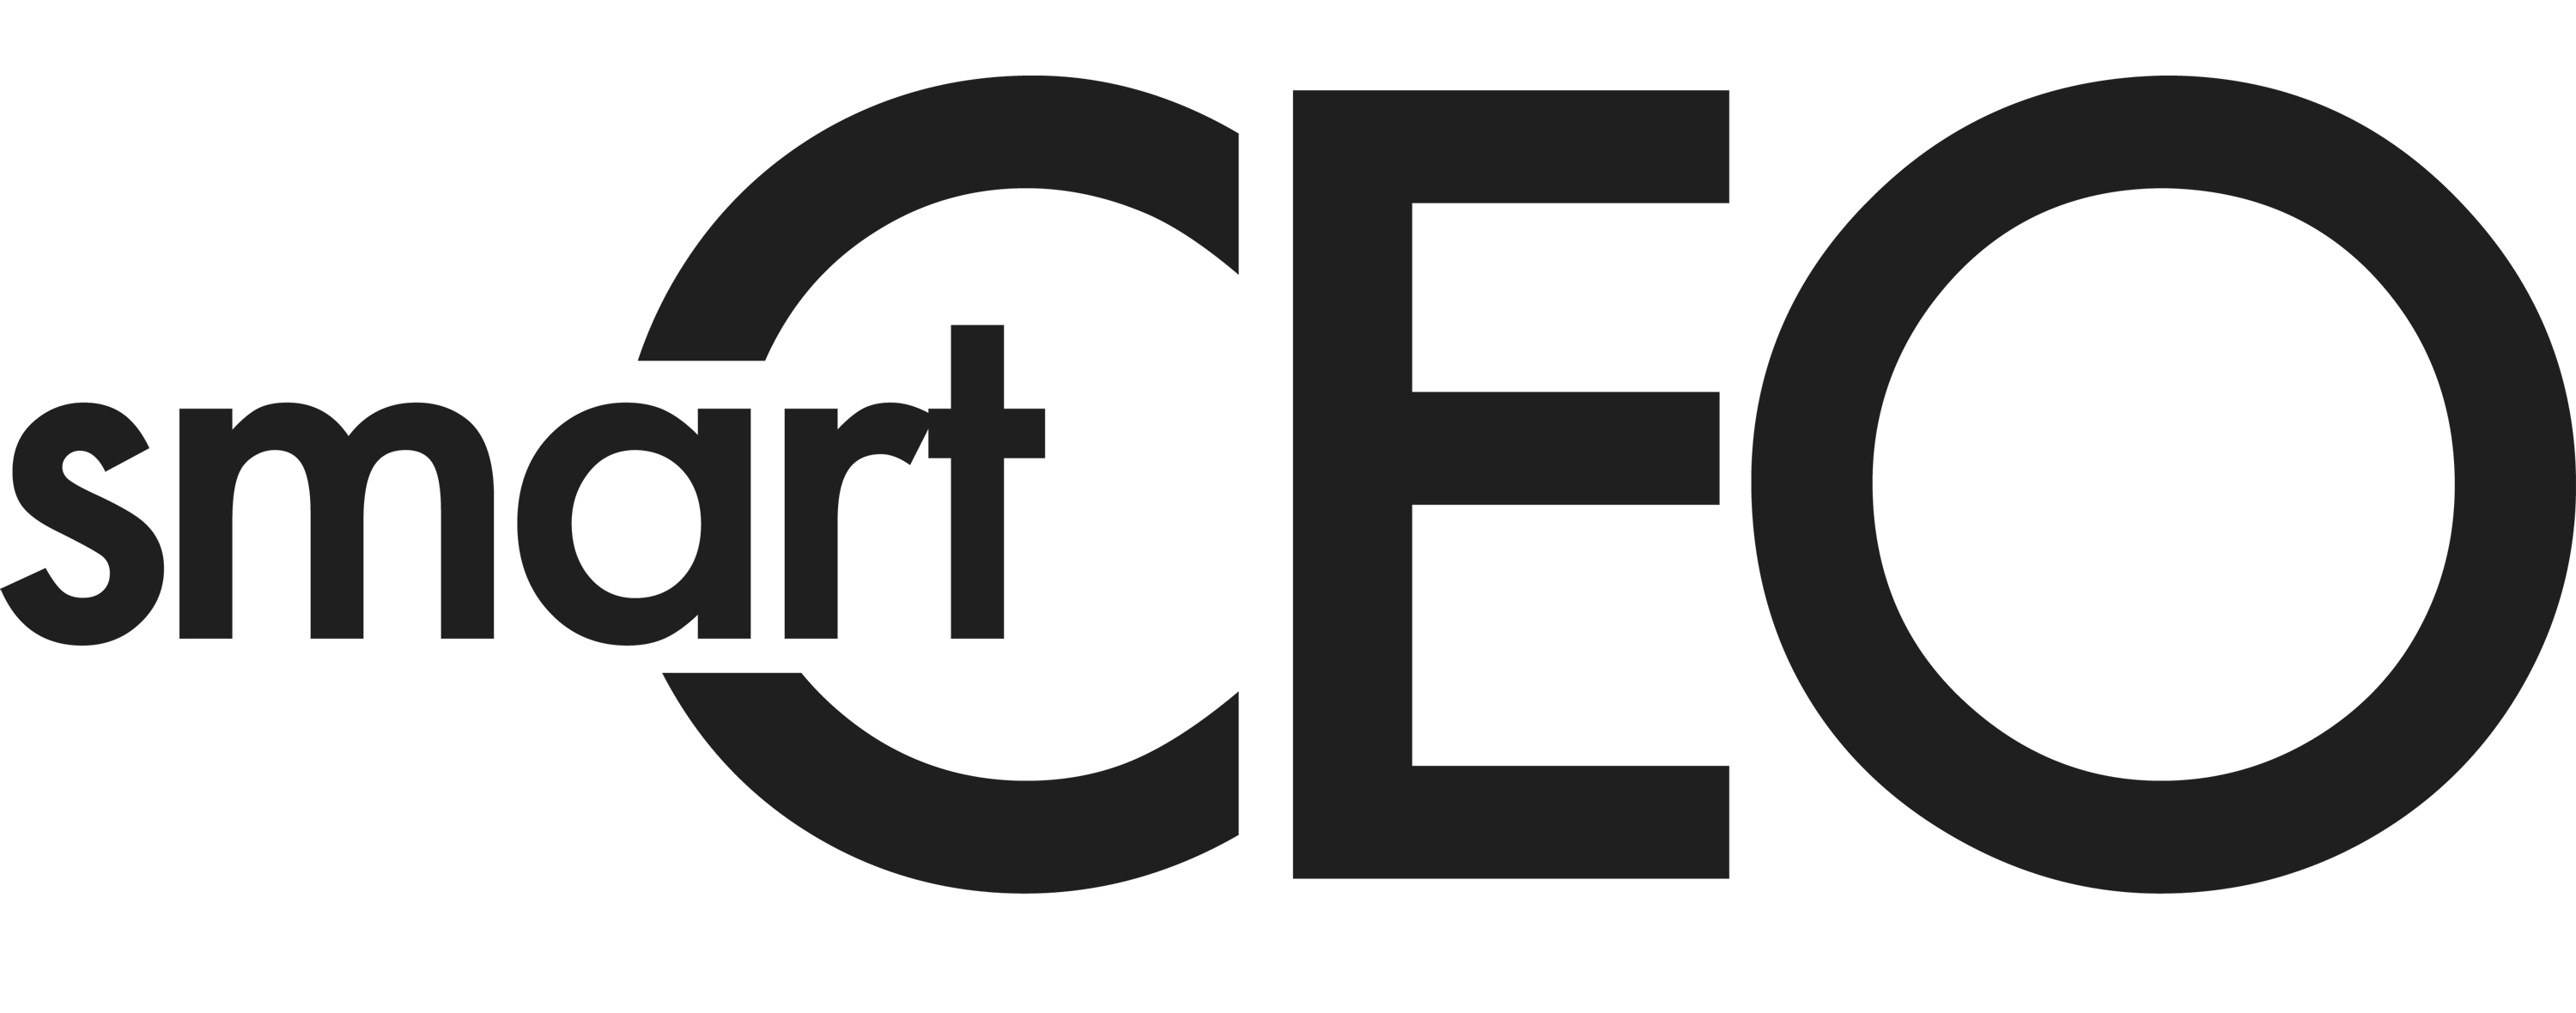 smartceo logo